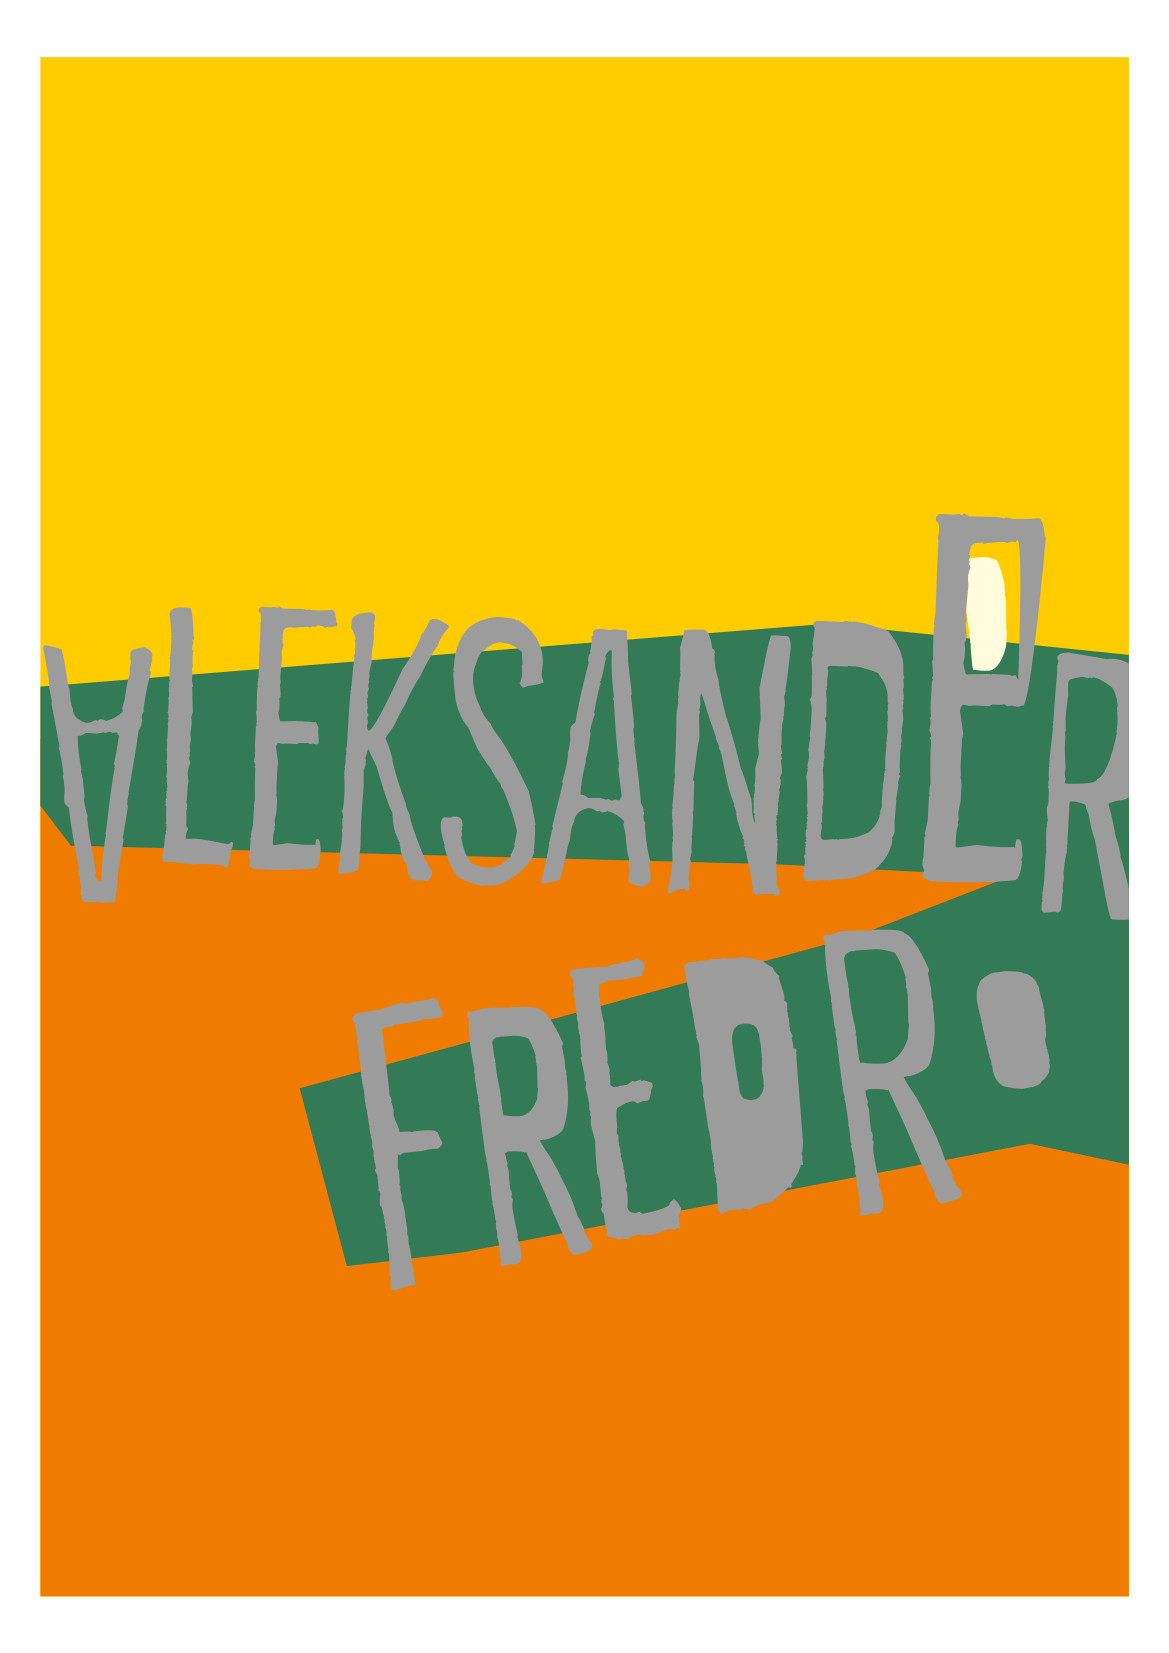 Aleksander Fredro - konkurs